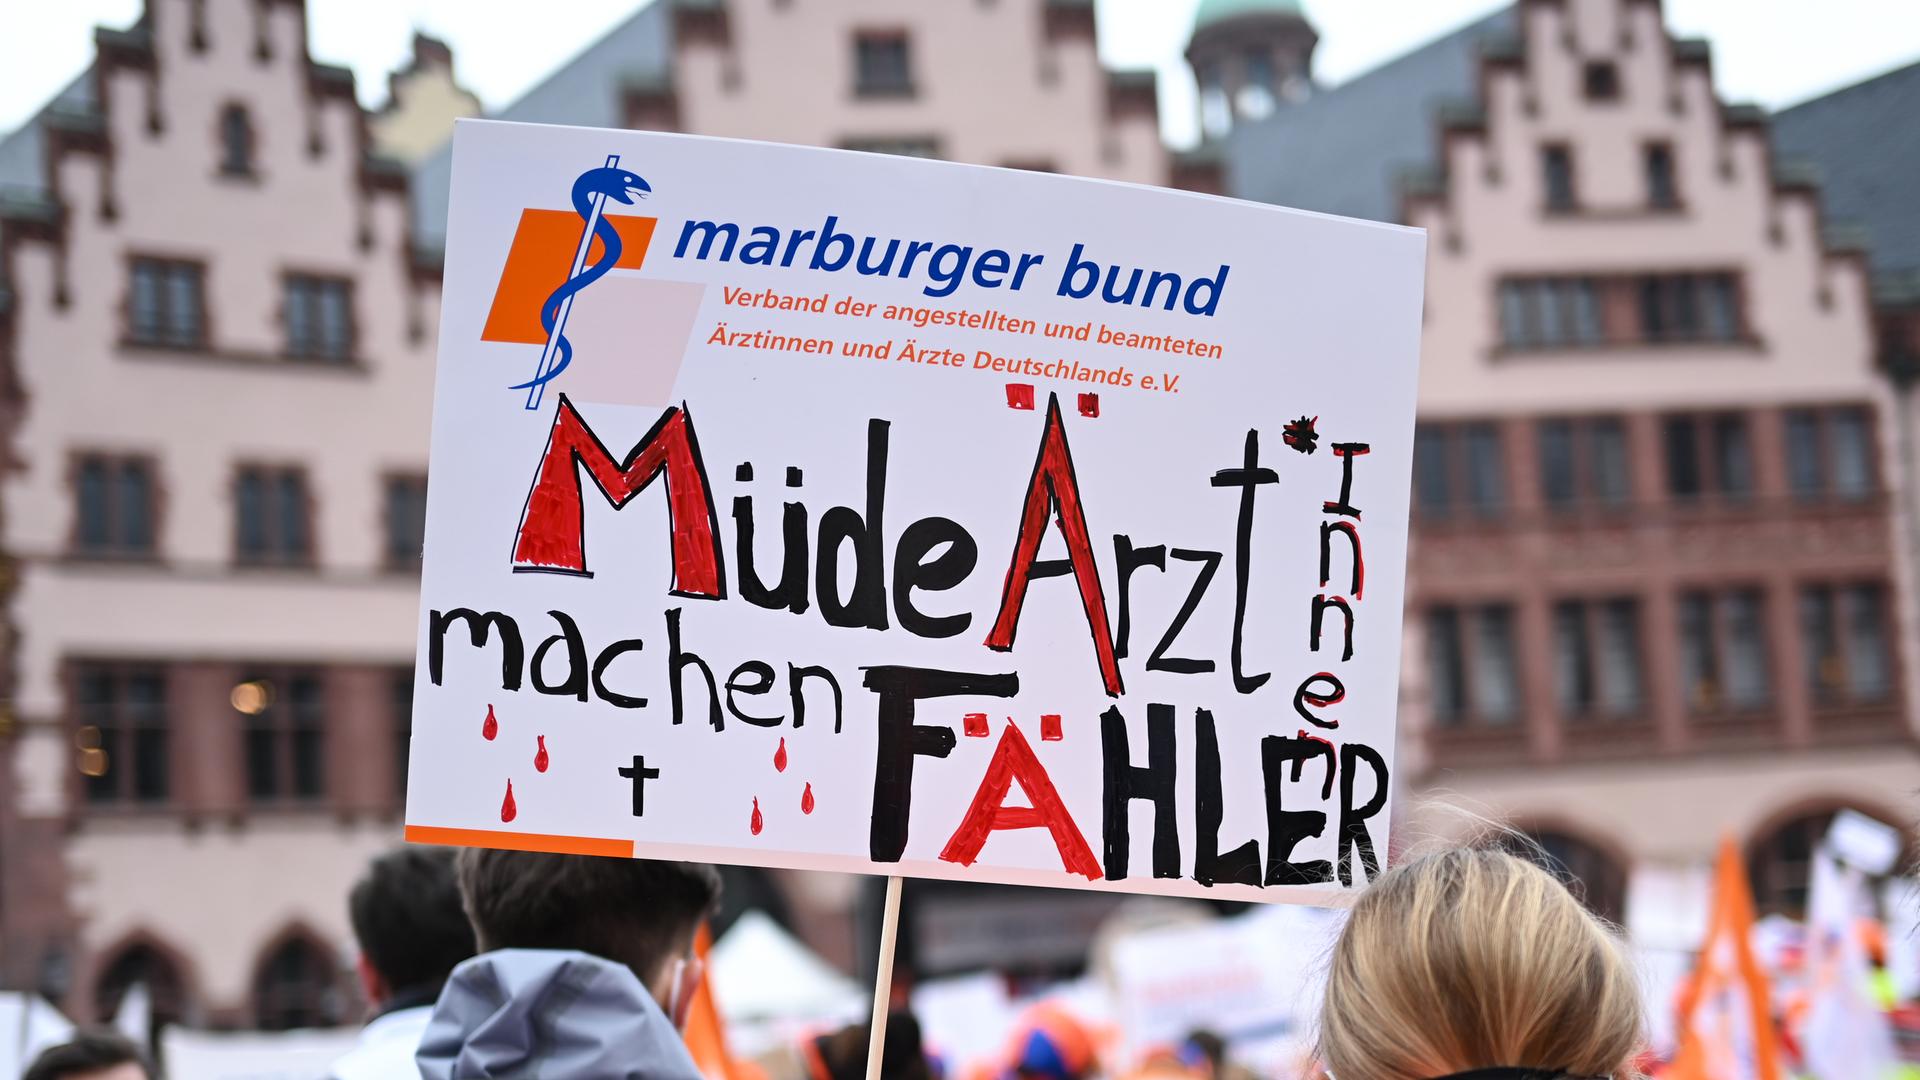 Eine Frau hält bei einer Kundgebung des Marburger Bund auf dem Römerberg ein Plakat mit der Aufschrift "Müde Ärzt*innen machen Fähler". Das Wort Fehler ist absichtlich falsch mit "ä" geschrieben.